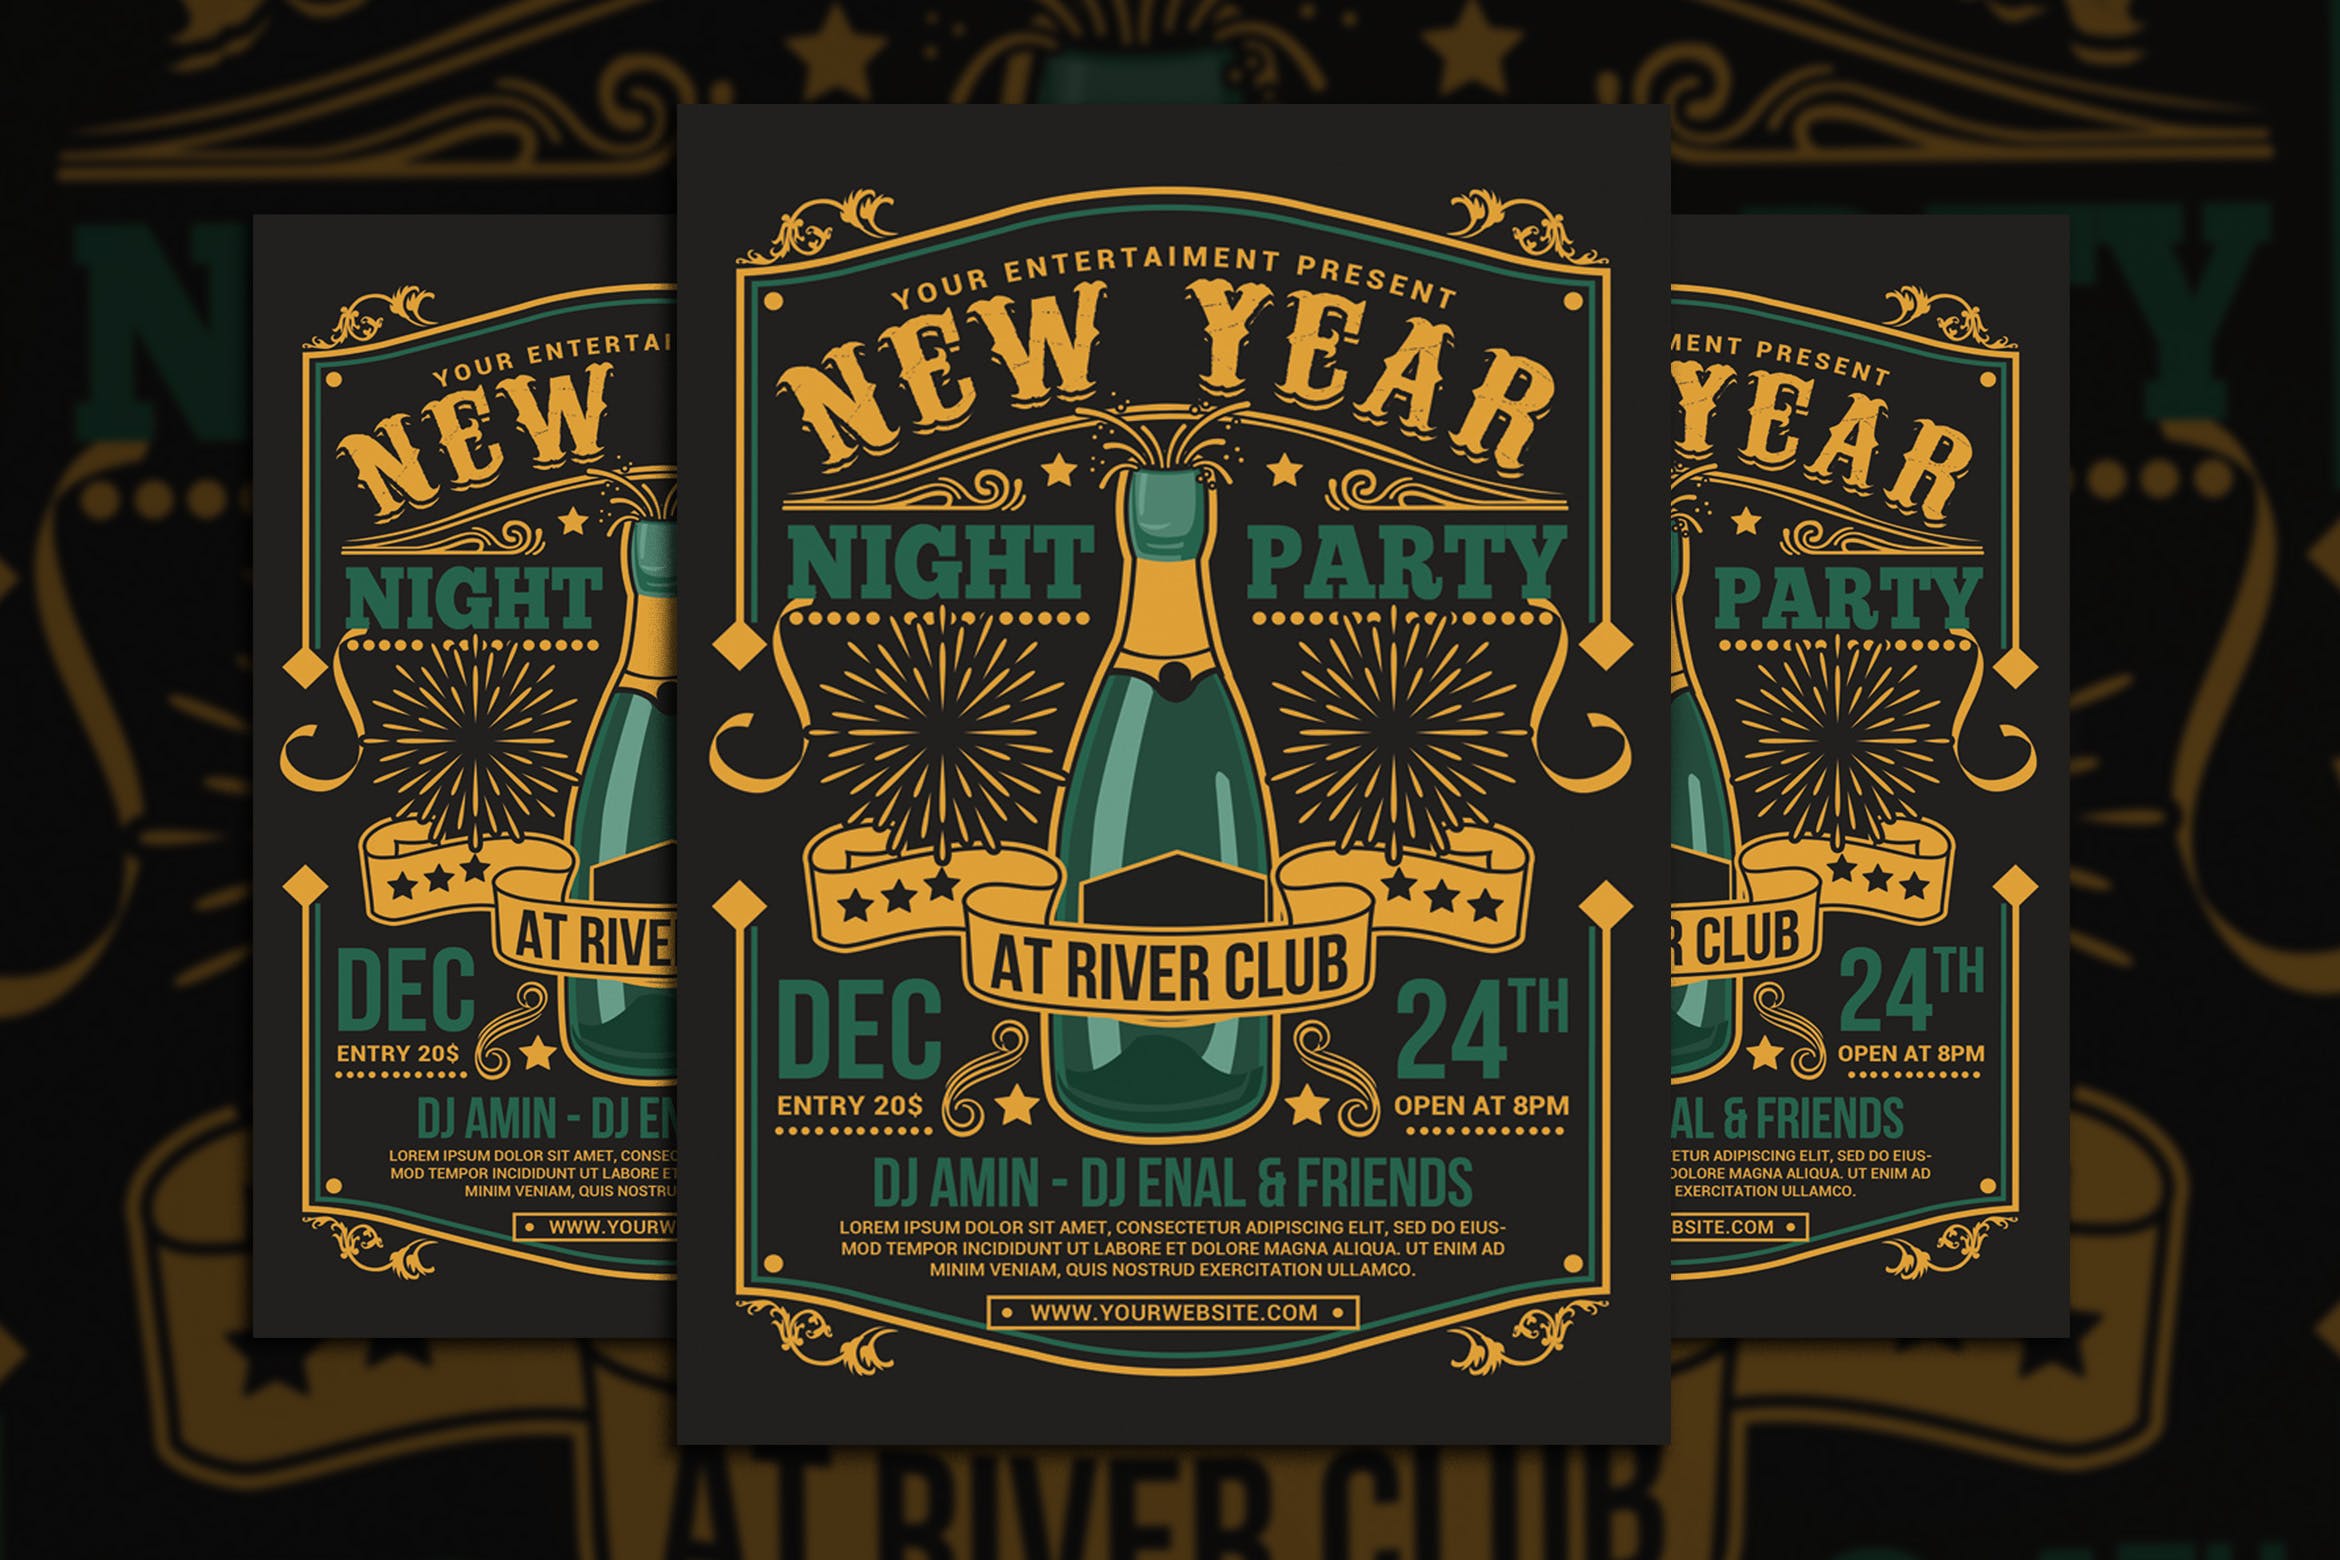 复古设计风格酒吧新年庆祝派对活动海报设计模板 New Year Champagne Party插图